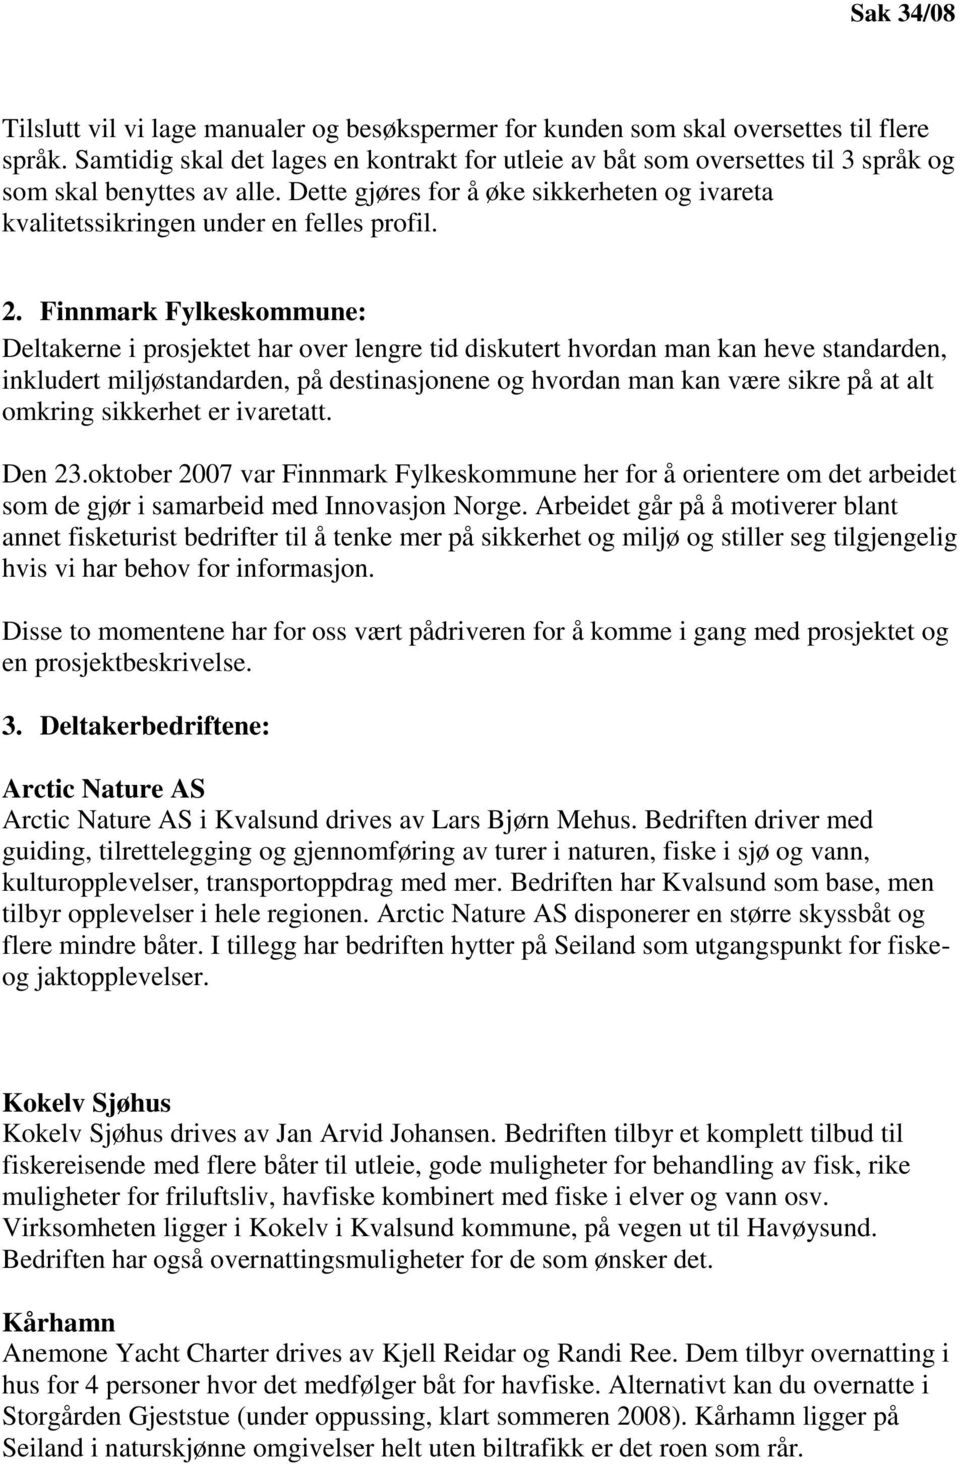 2. Finnmark Fylkeskommune: Deltakerne i prosjektet har over lengre tid diskutert hvordan man kan heve standarden, inkludert miljøstandarden, på destinasjonene og hvordan man kan være sikre på at alt